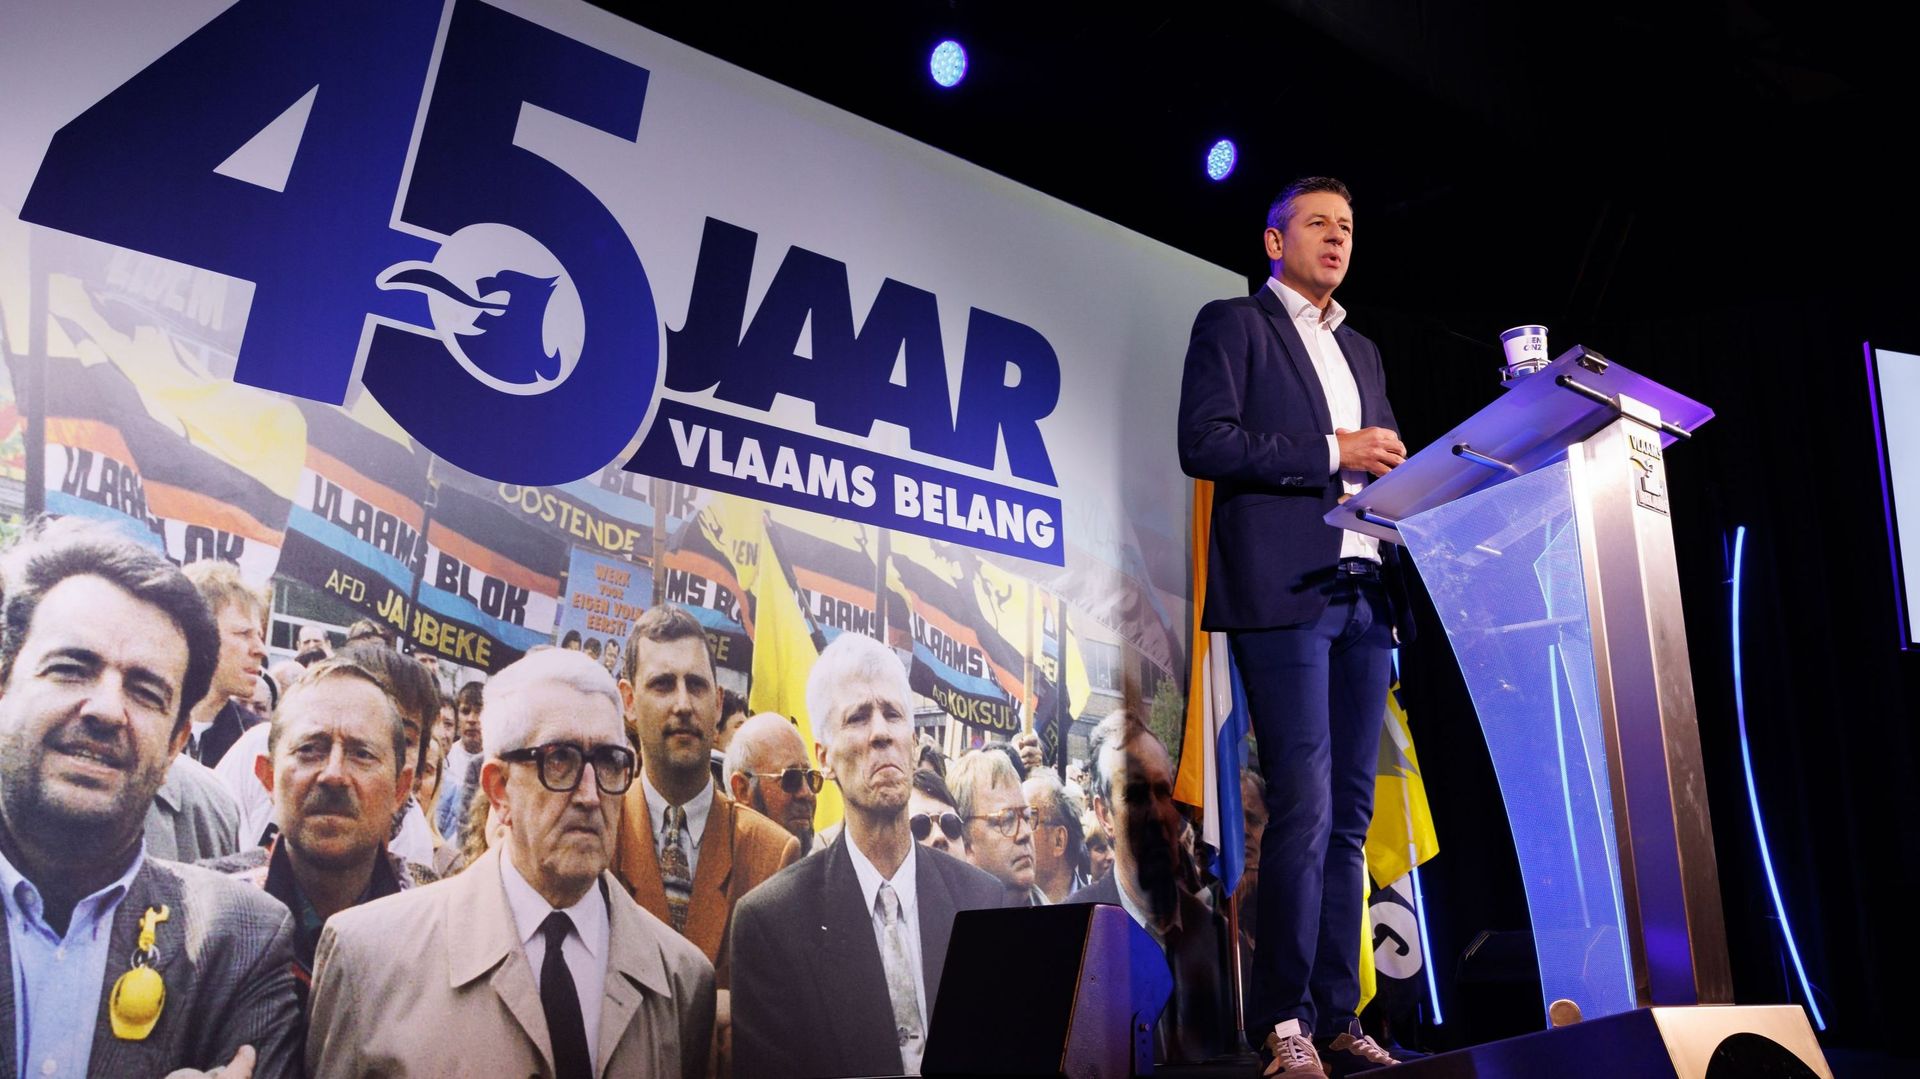 Chris Janssens lors du 45e anniversaire du Vlaams Belang le 24 septembre 2022